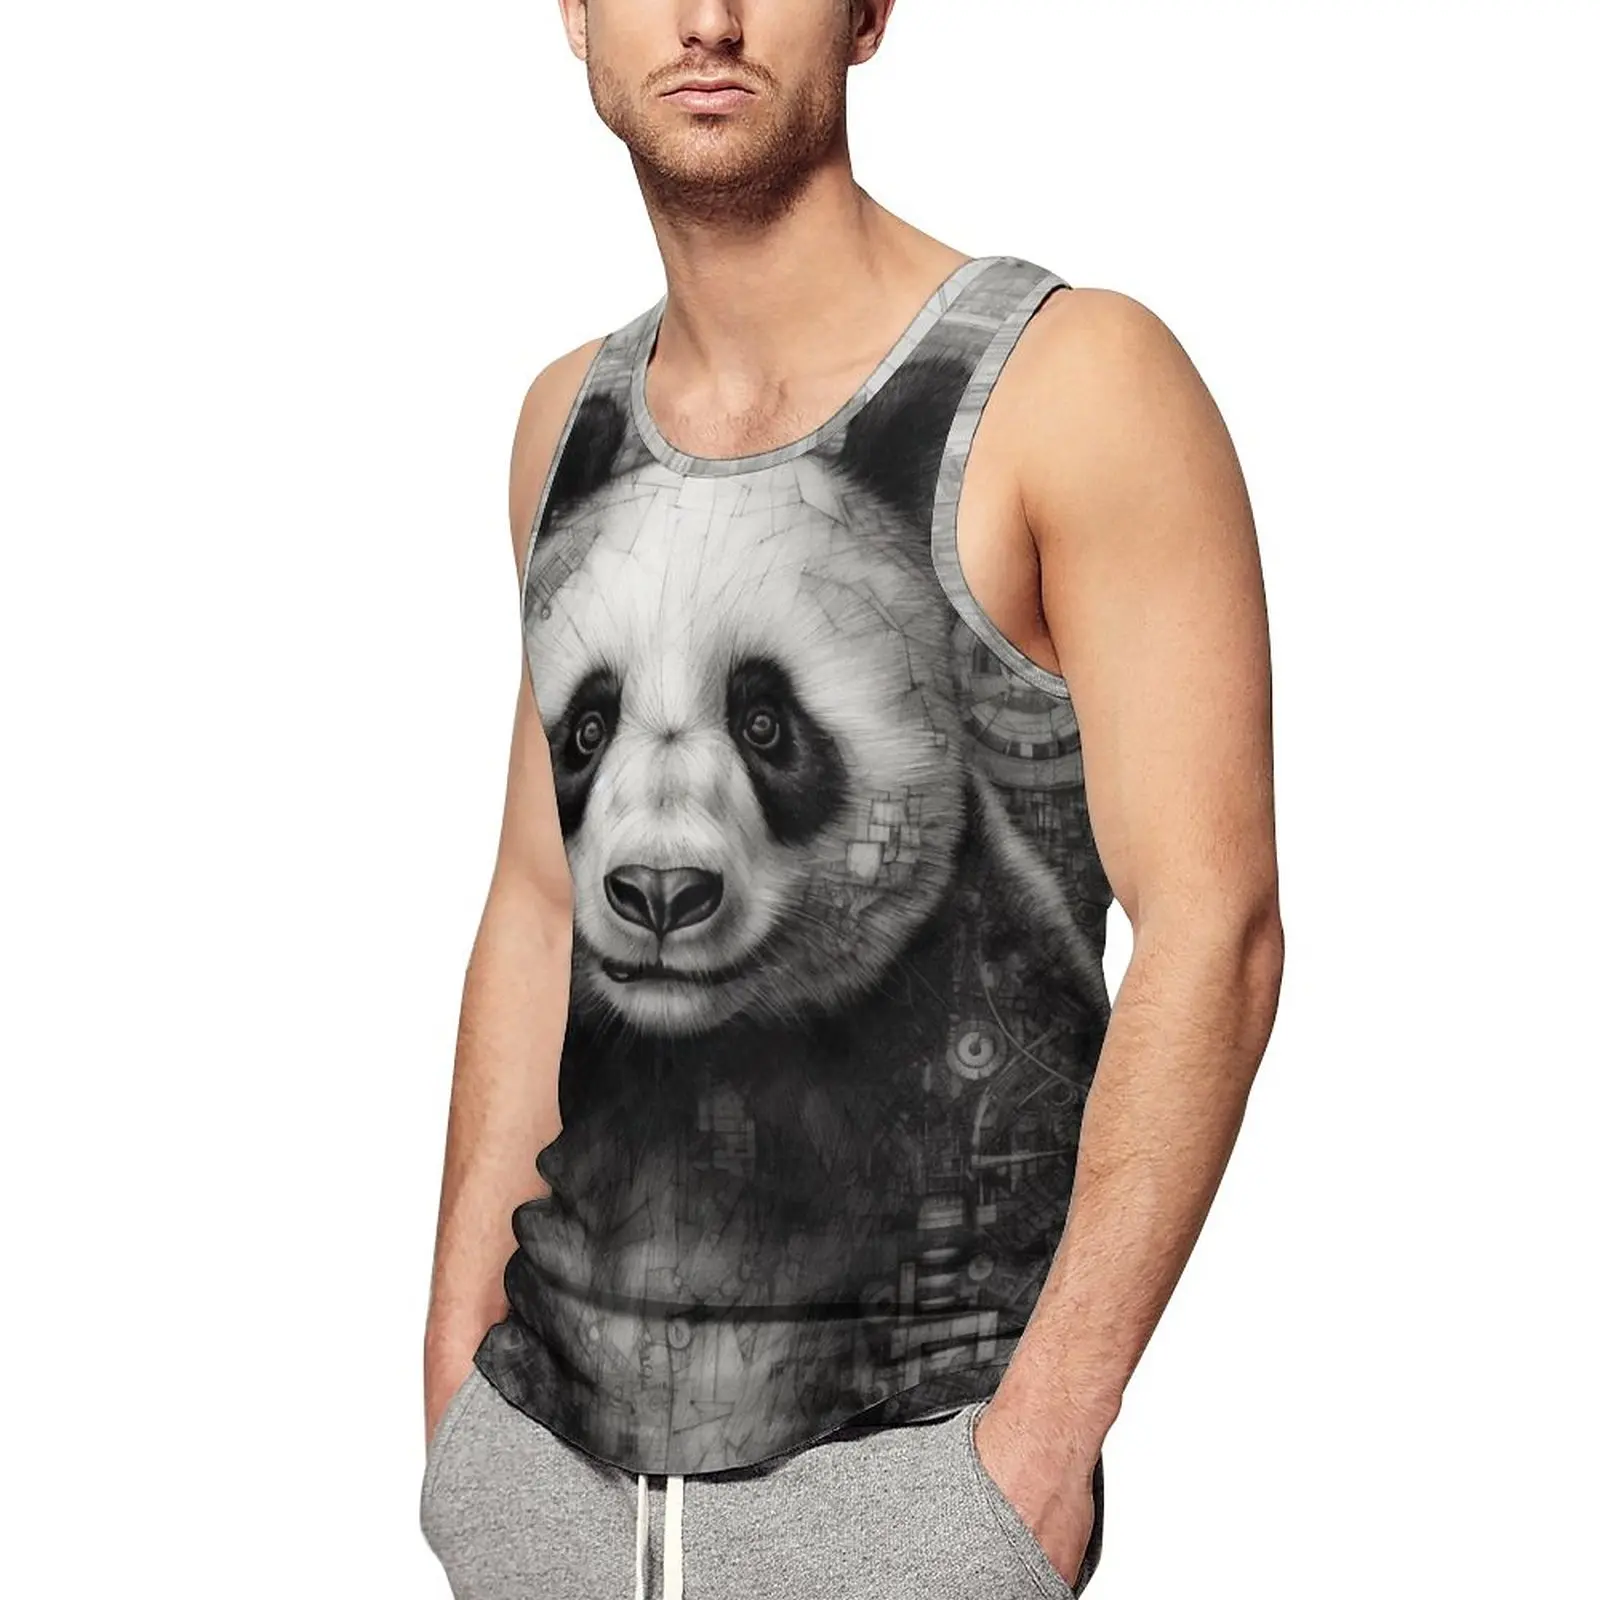 

Майка-карандаш мужская с принтом панды, пляжный топ для тренировок, индивидуальная уличная одежда, рубашки без рукавов 3XL, 4XL, 5XL